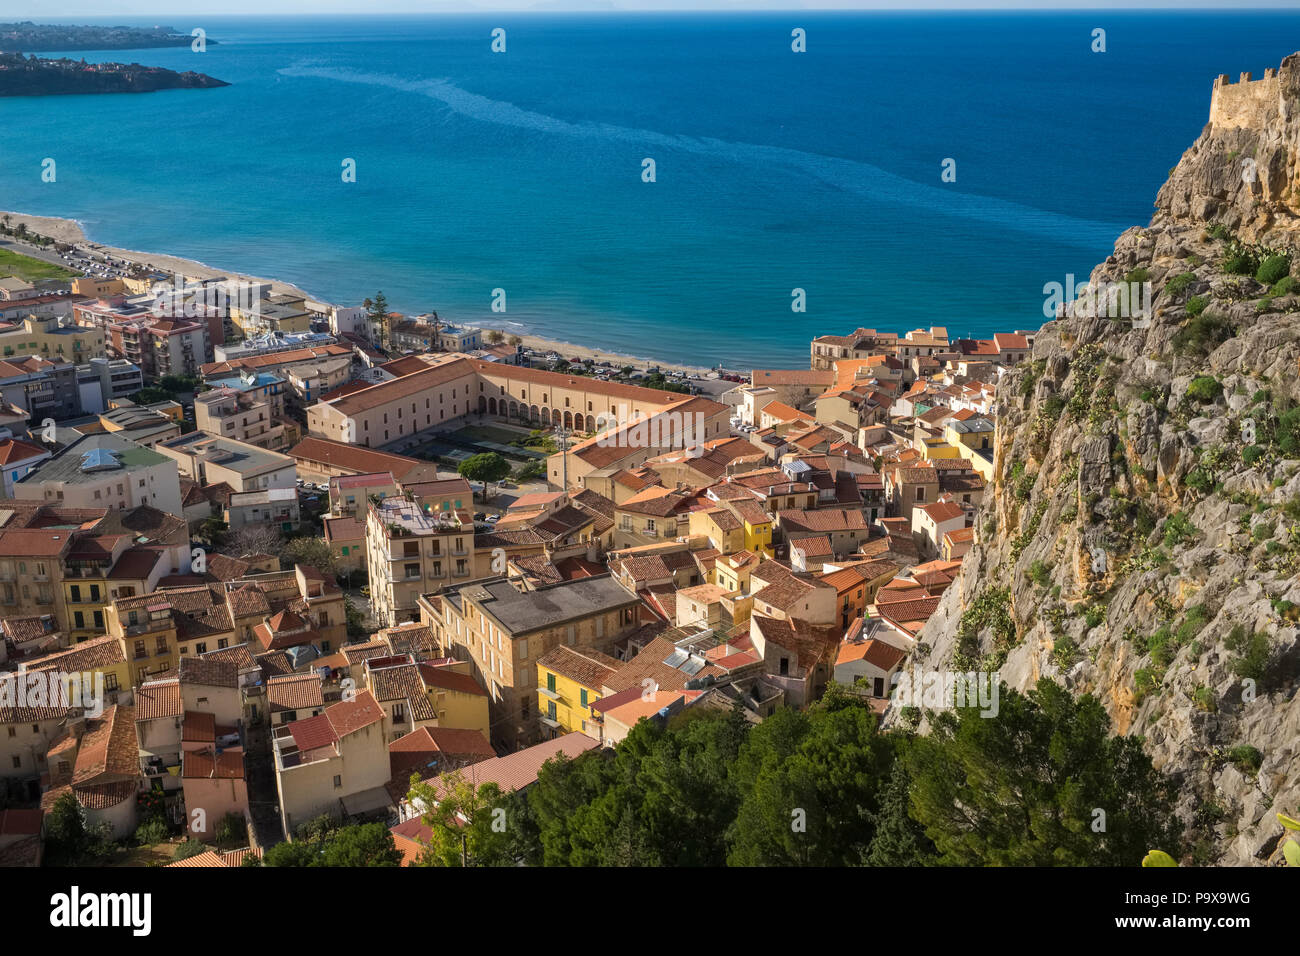 Vue aérienne de la ville et les toits rouges de Cefalu, Sicile, Italie, Europe Banque D'Images